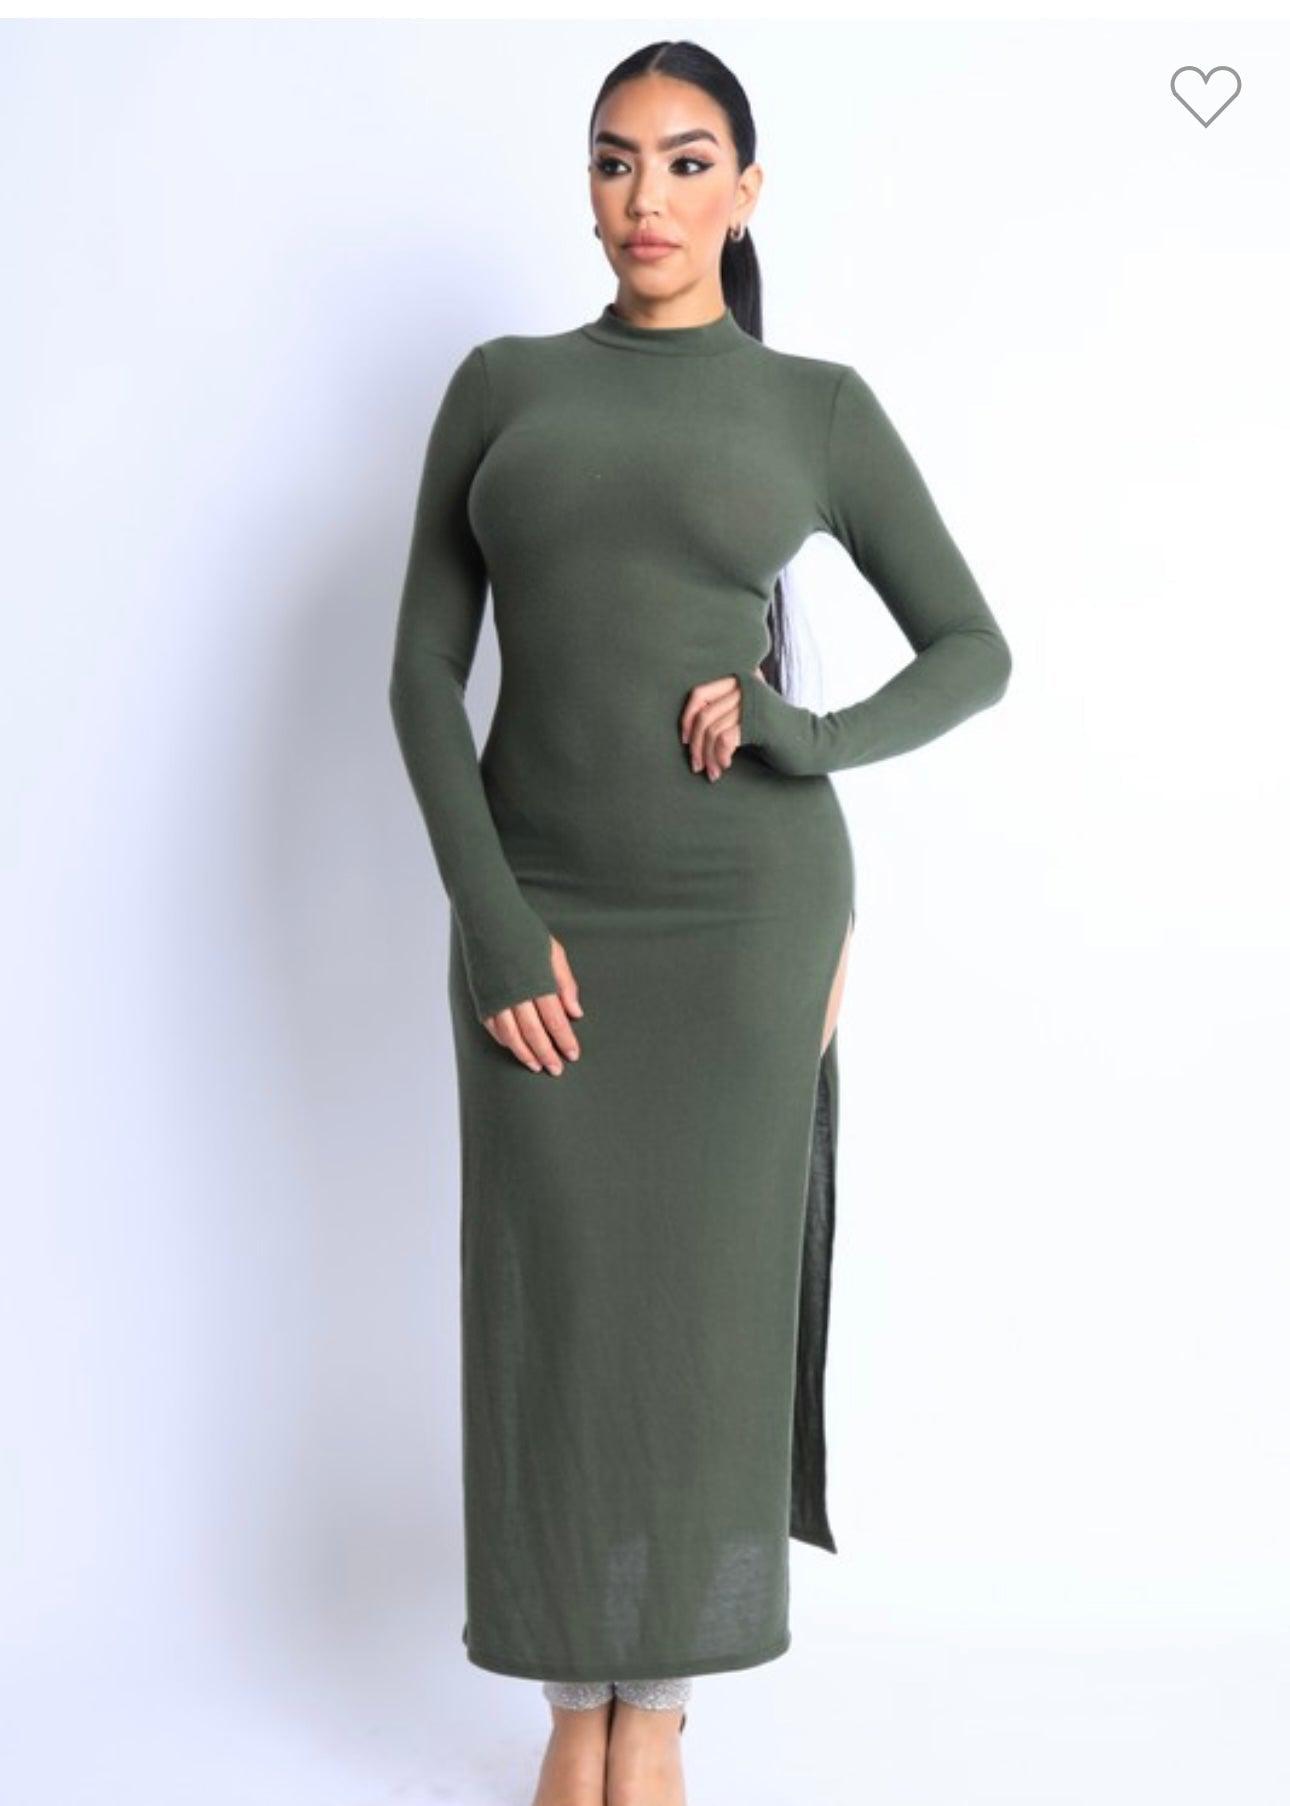 Maxi Dress Olive-Abundance Junky Stylish Clothing Boutique for Women